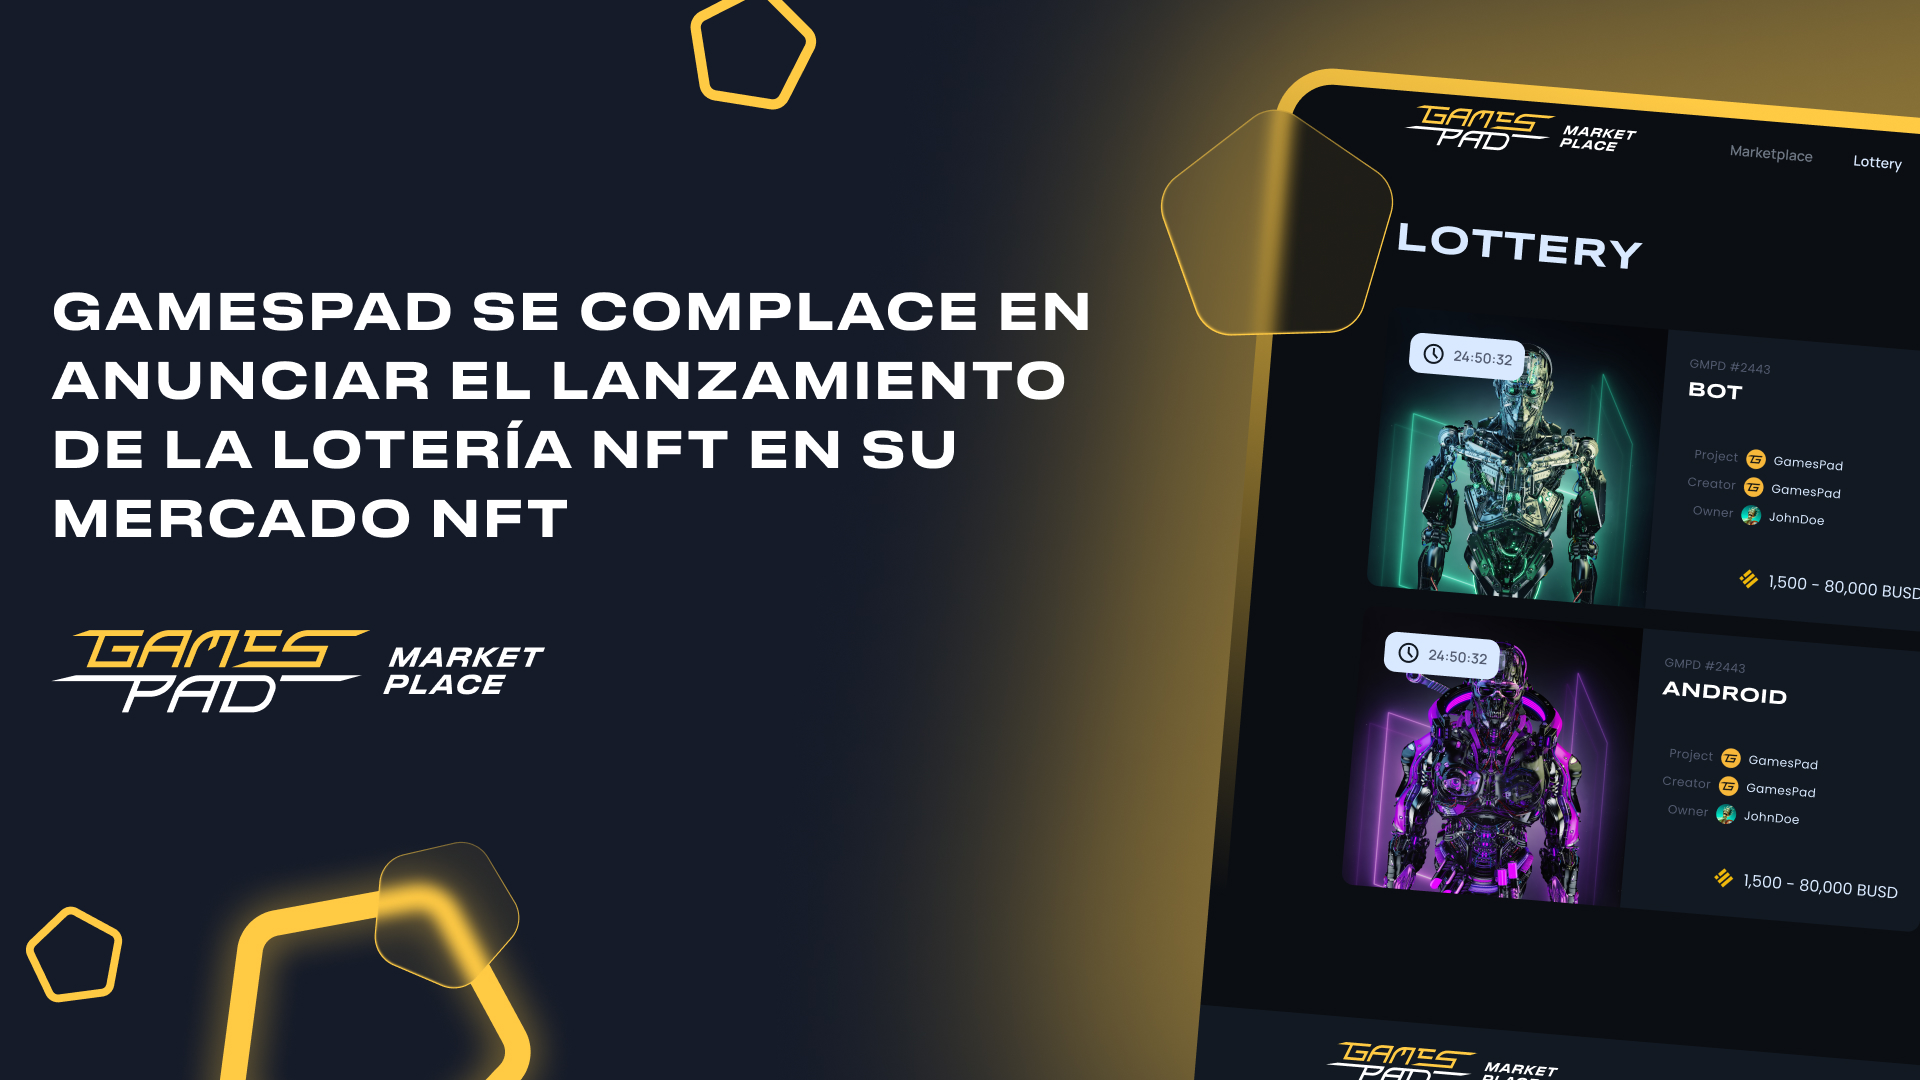 GamesPad se complace en anunciar el lanzamiento de la lotería NFT en su mercado NFT